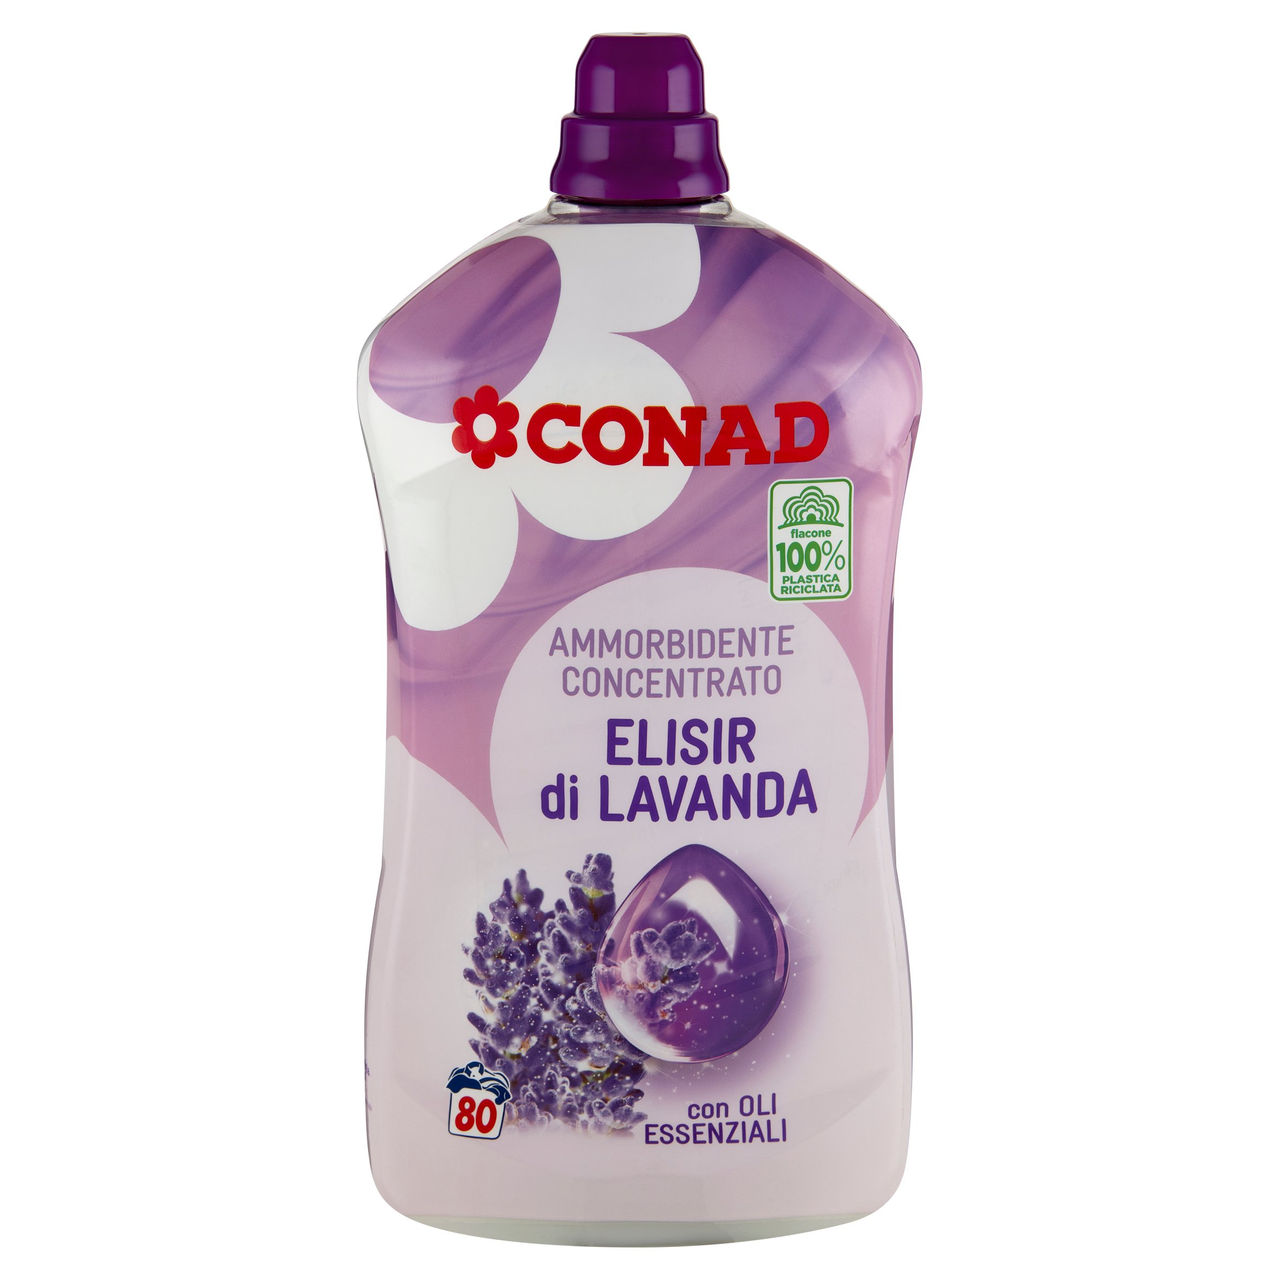 CONAD Ammorbidente Concentrato Elisir di Lavanda 2000 ml